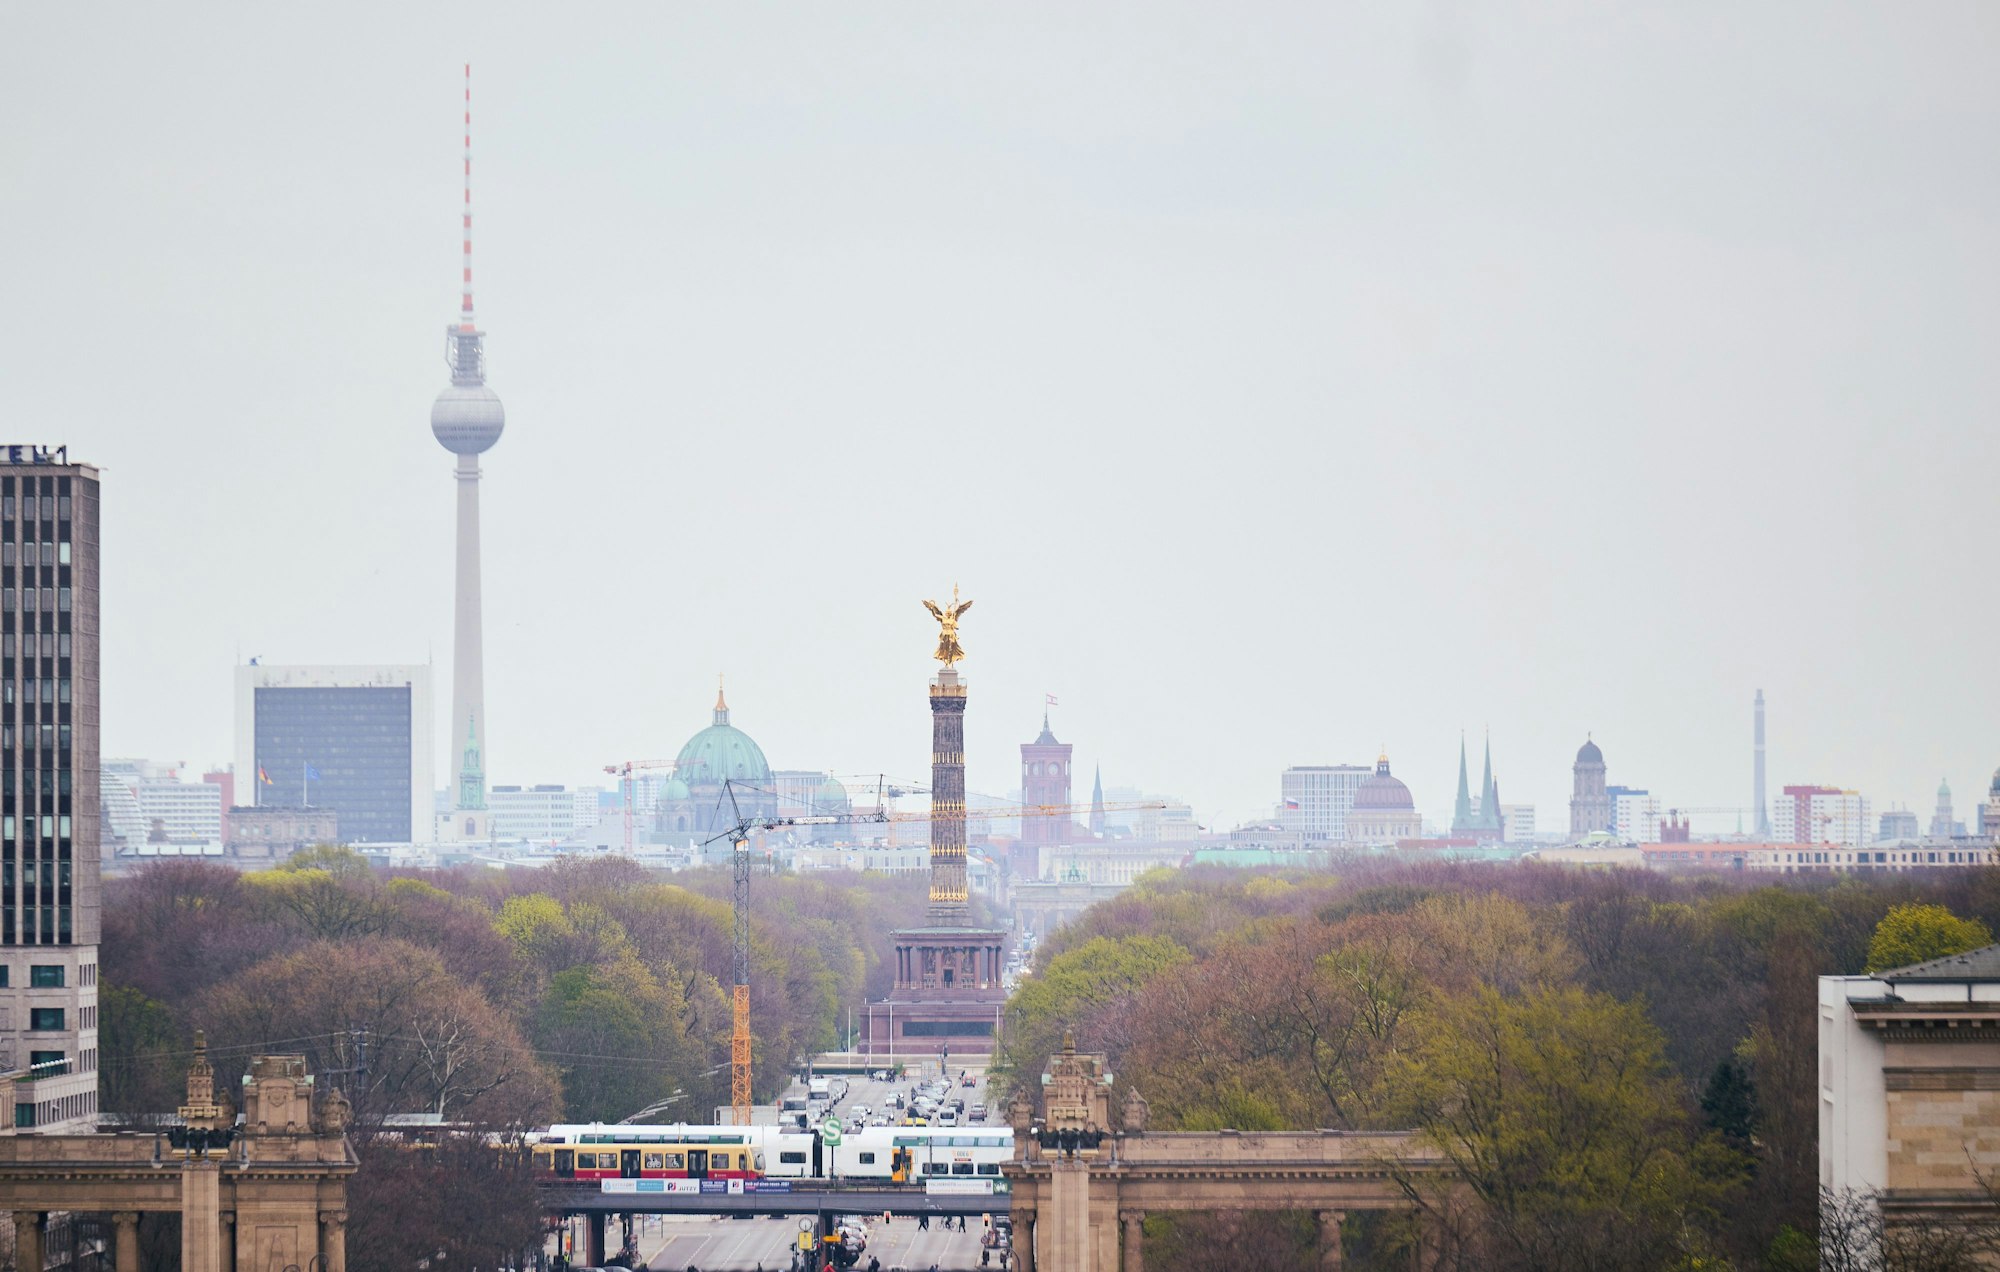 Blick vom Ernst-Reuter-Platz über das im Dunst gehüllte Berlin. Im Hintergrund ist der Fernsehturm und der Berliner Dom zu erkennen.